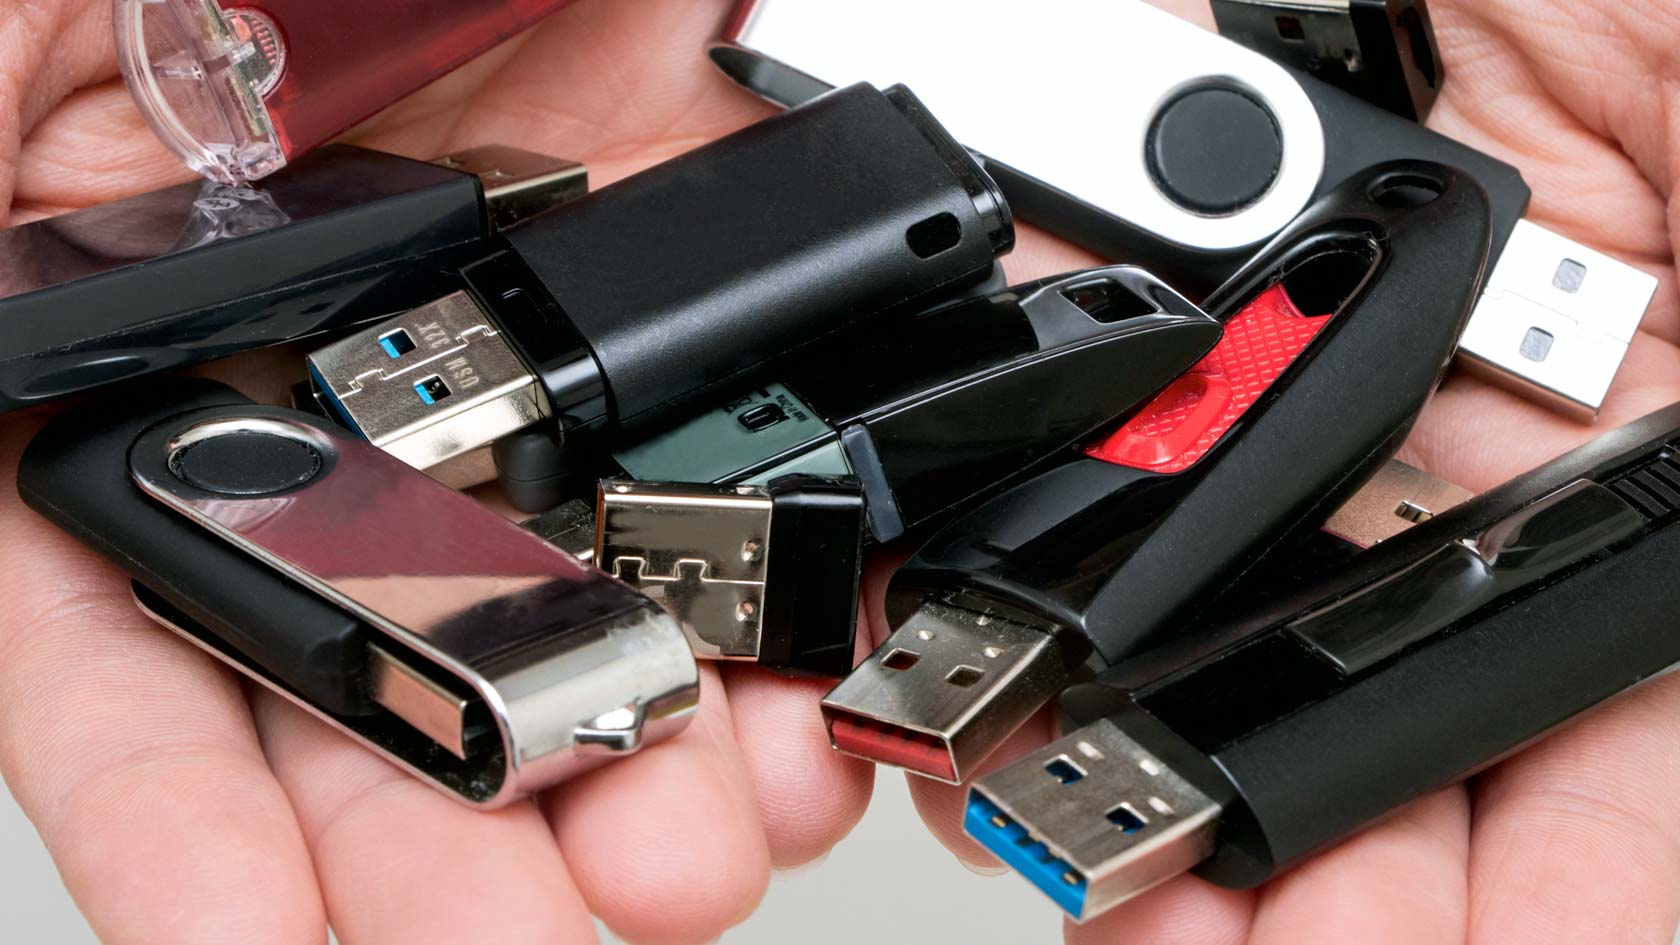 Händer fulla med olika USB-minnen.